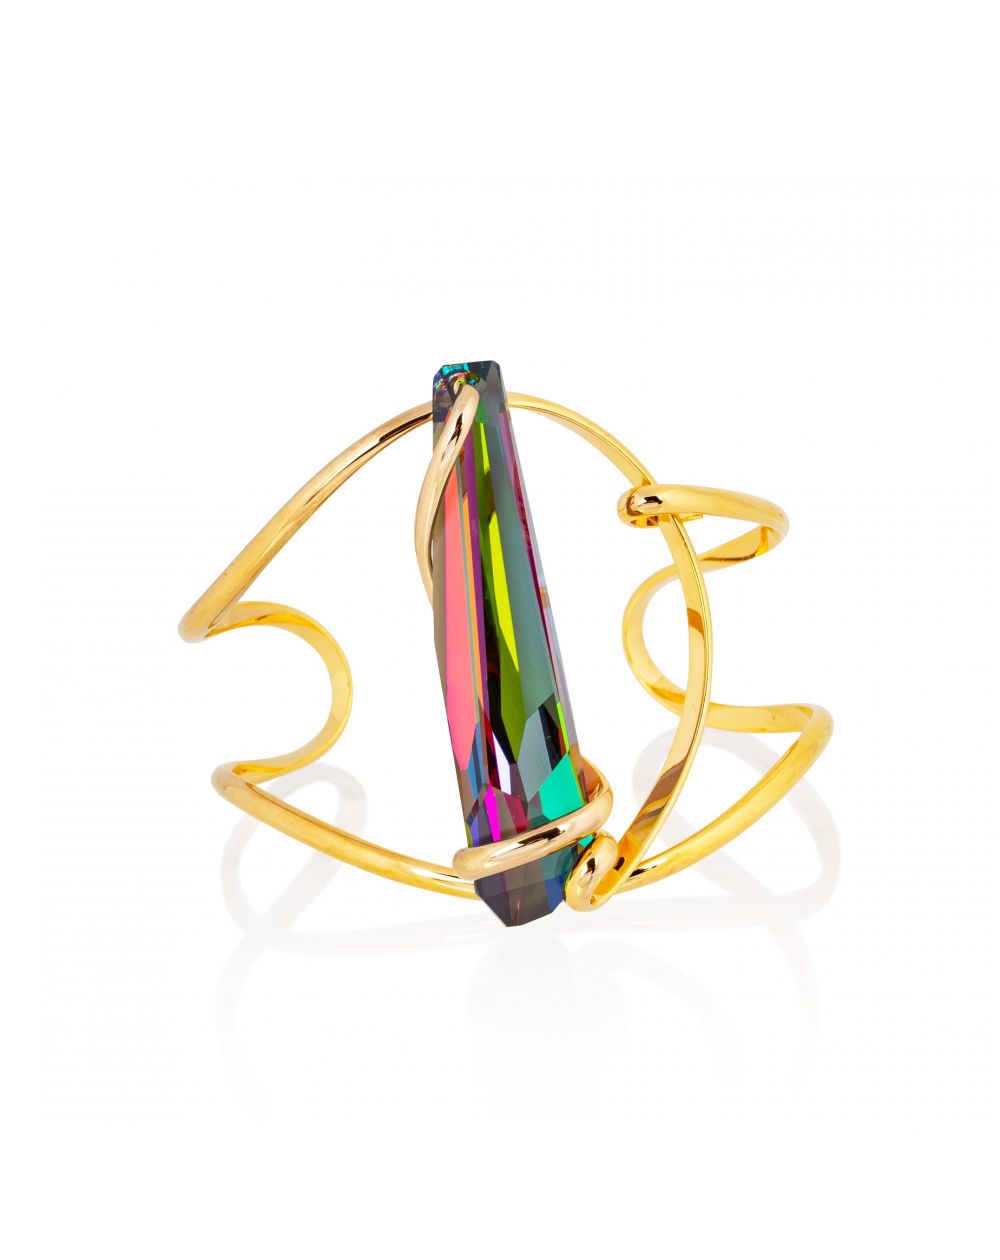 Andrea Marazzini bijoux - Bracelet cristal Swarovski stalattite vitral